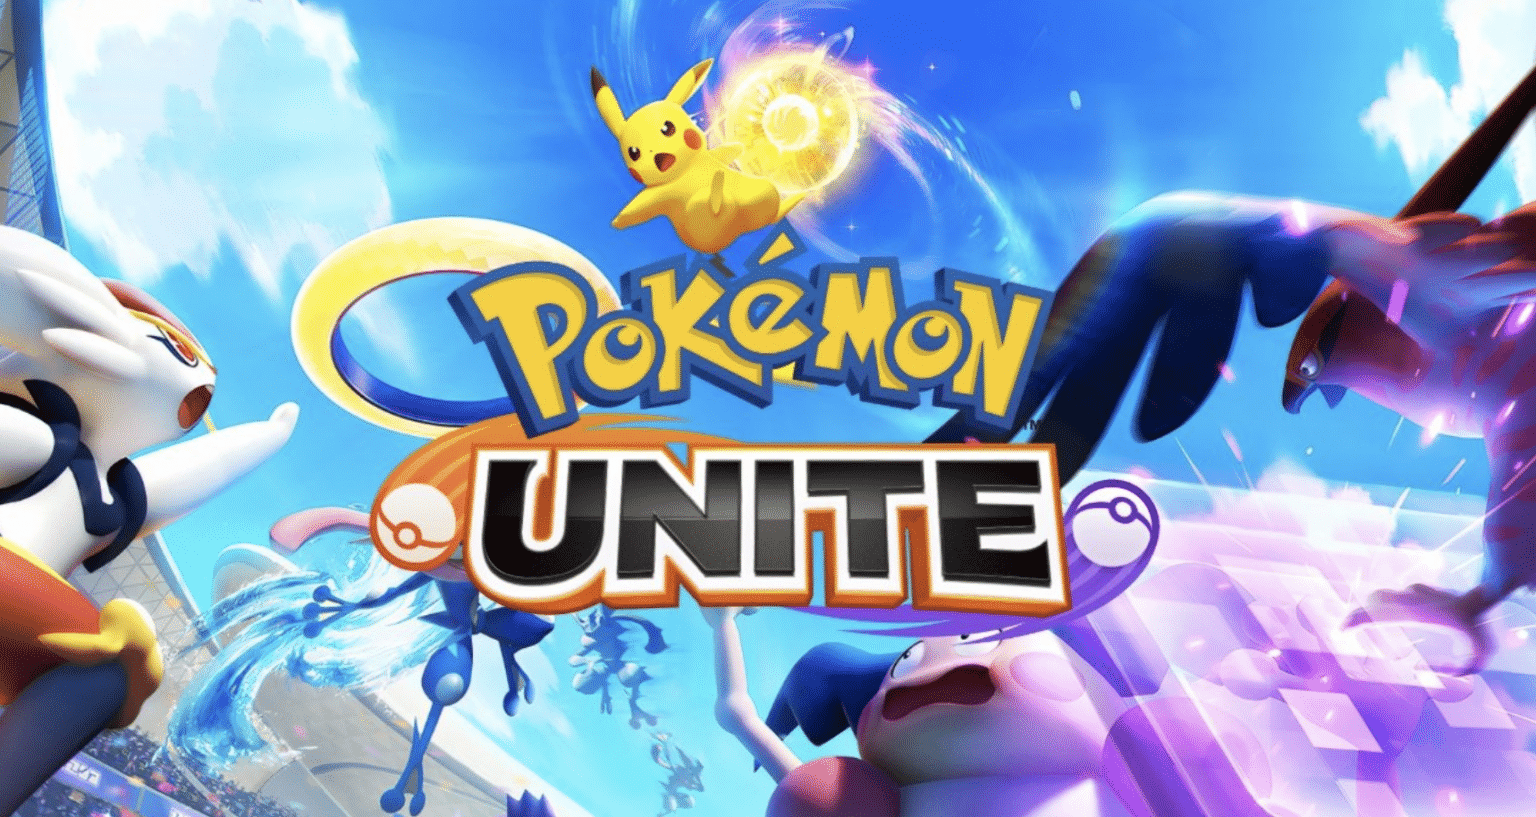 Pokemon Unite to arrive on iOS this September